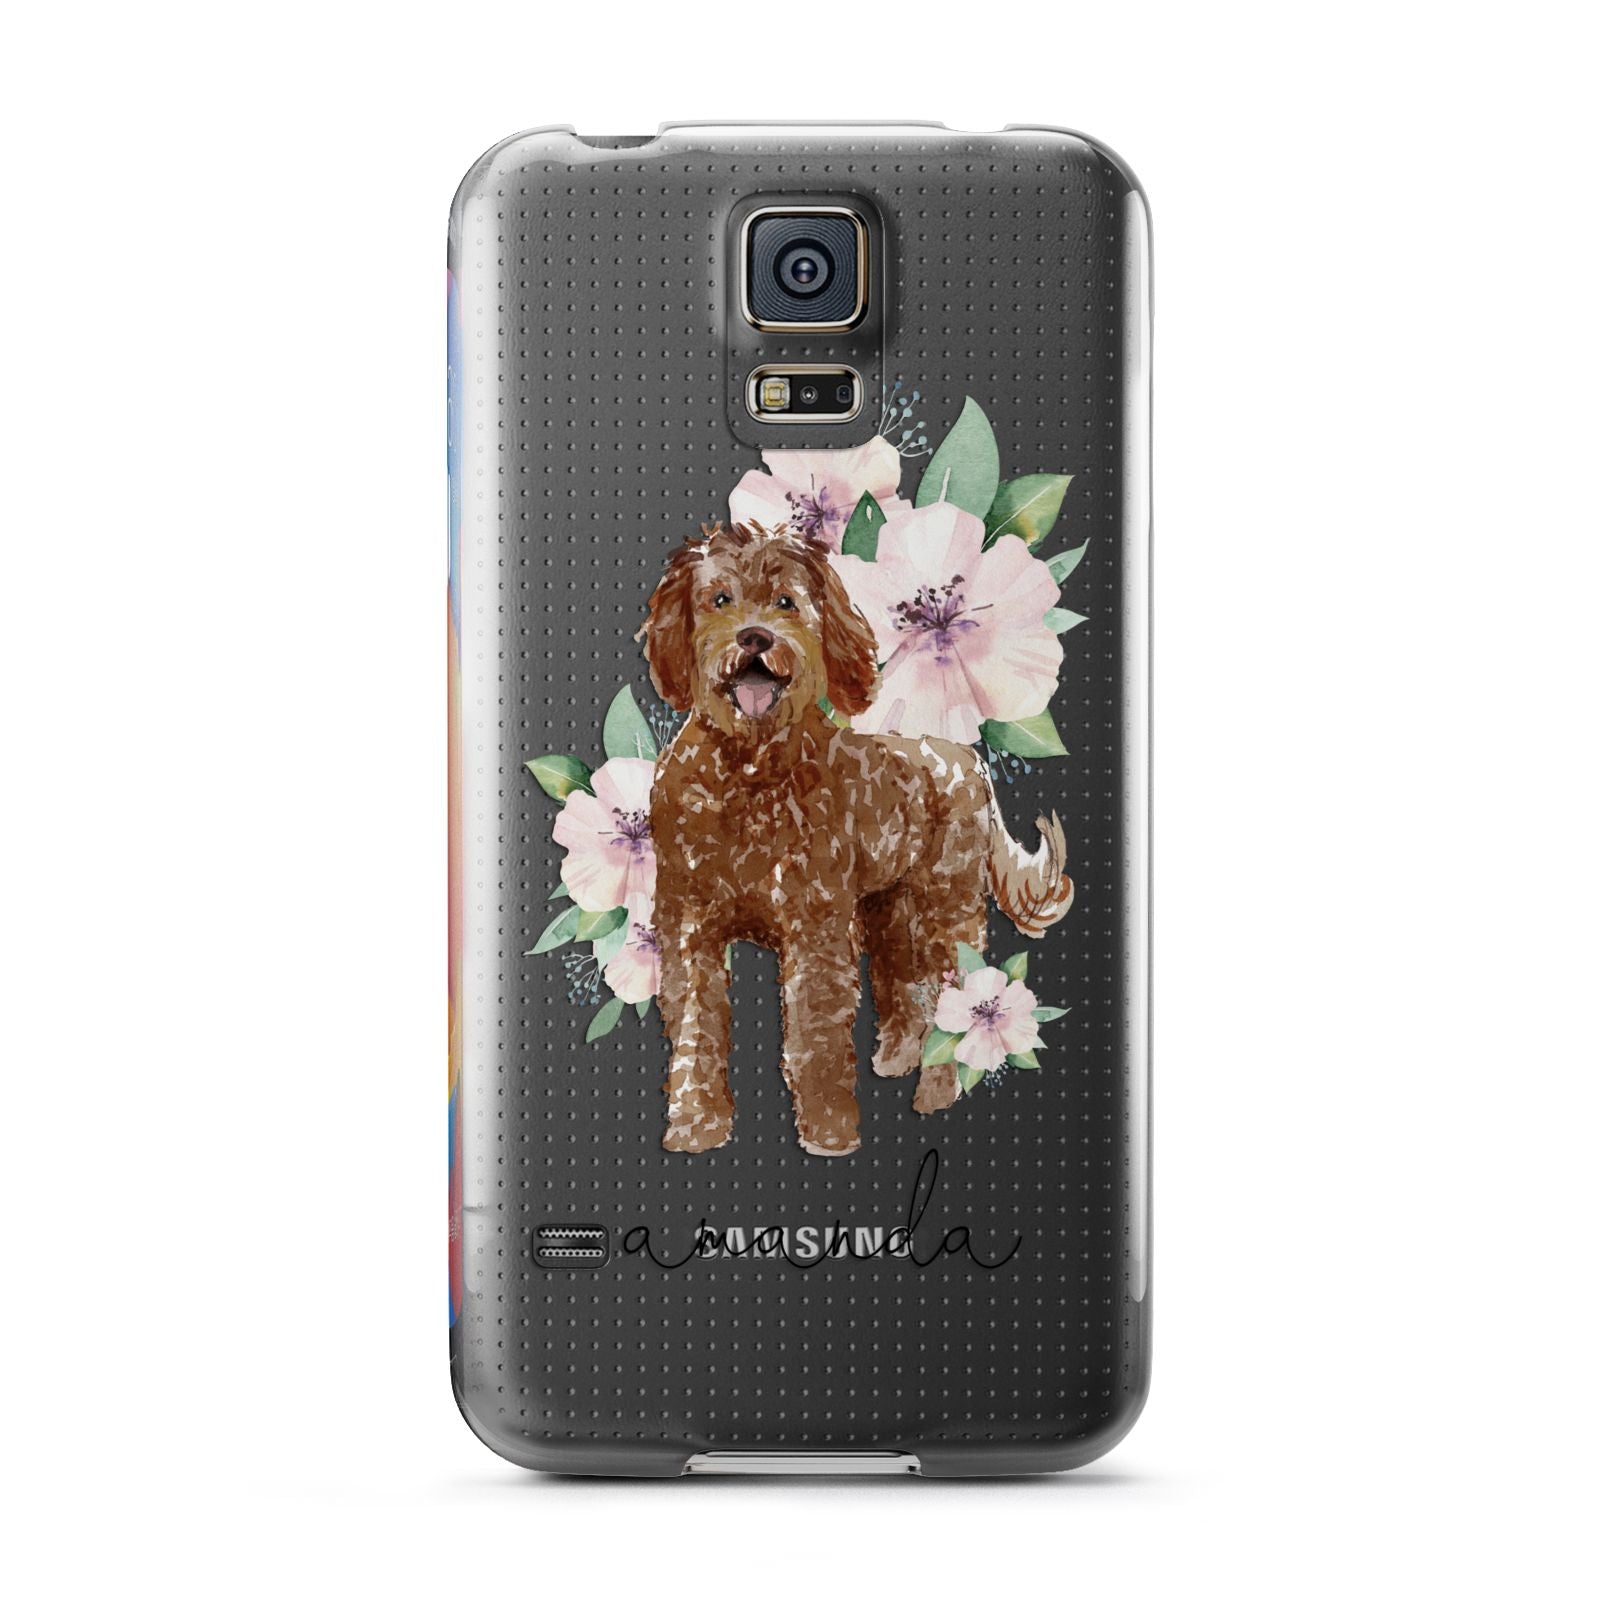 Personalised Labradoodle Samsung Galaxy S5 Case